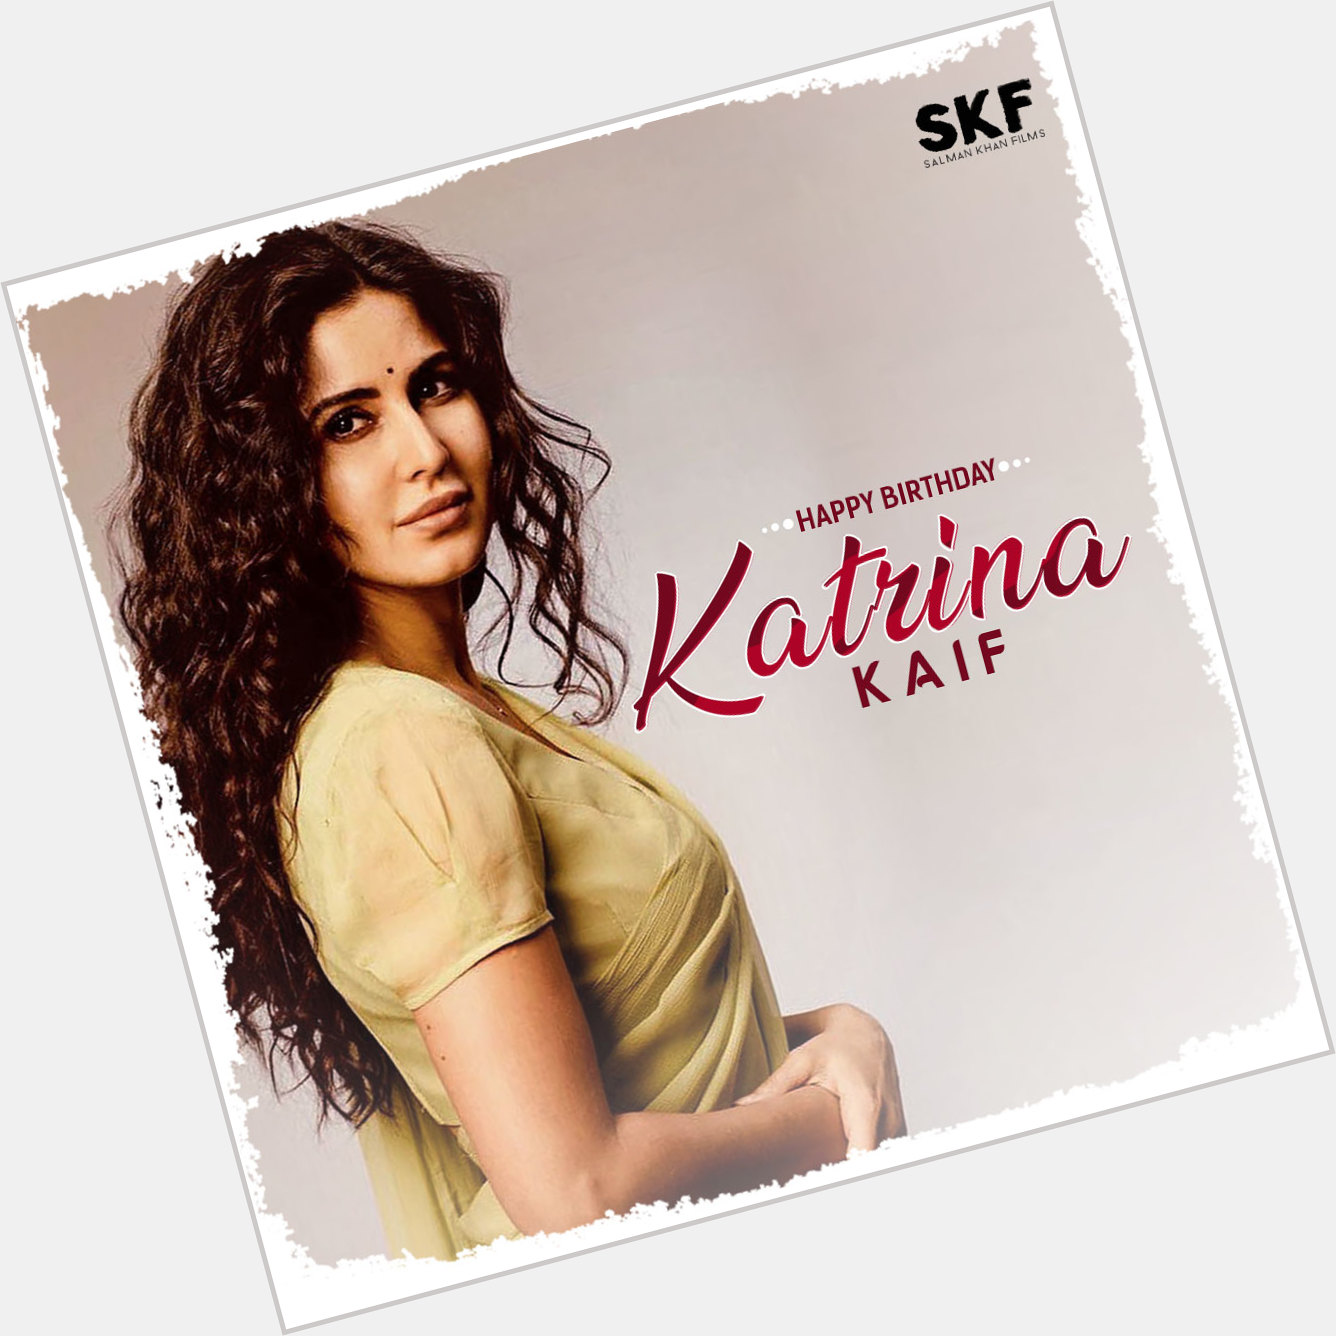 Wishing a very Happy Birthday to the ever beautiful Katrina Kaif! 